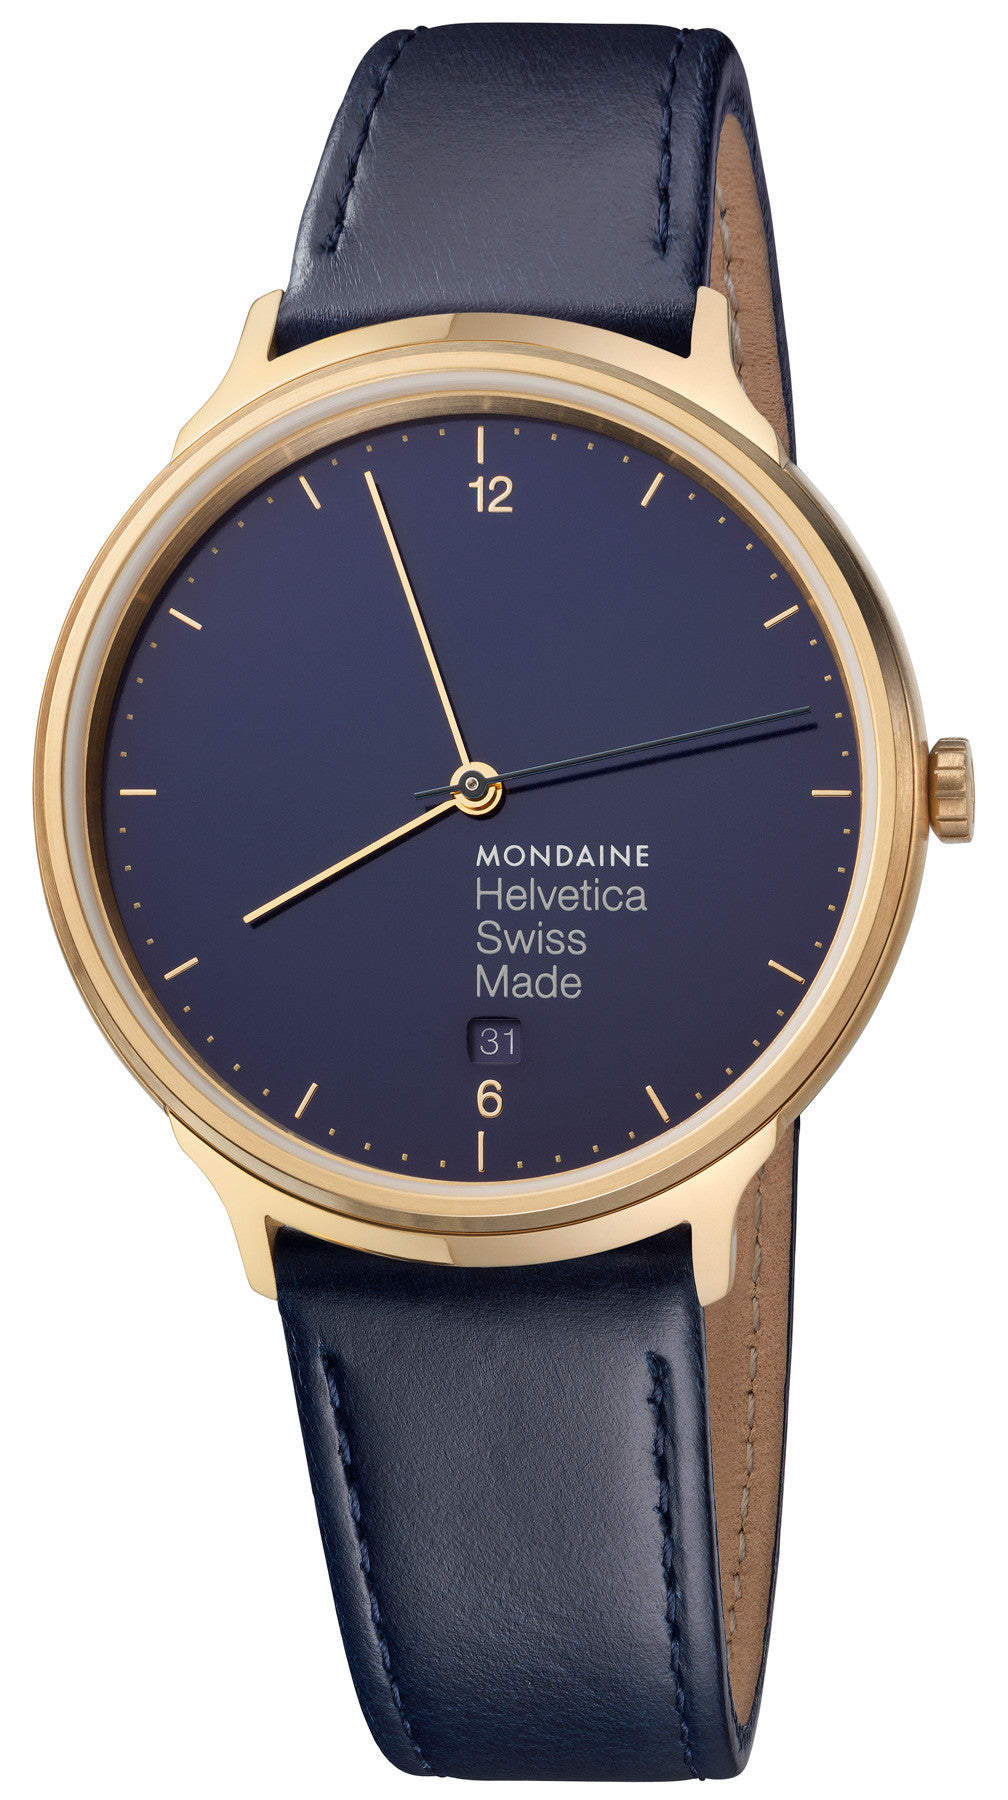 Photos - Wrist Watch Mondaine Watch Helvetica No1 Blue Marine D - Blue MD-156 